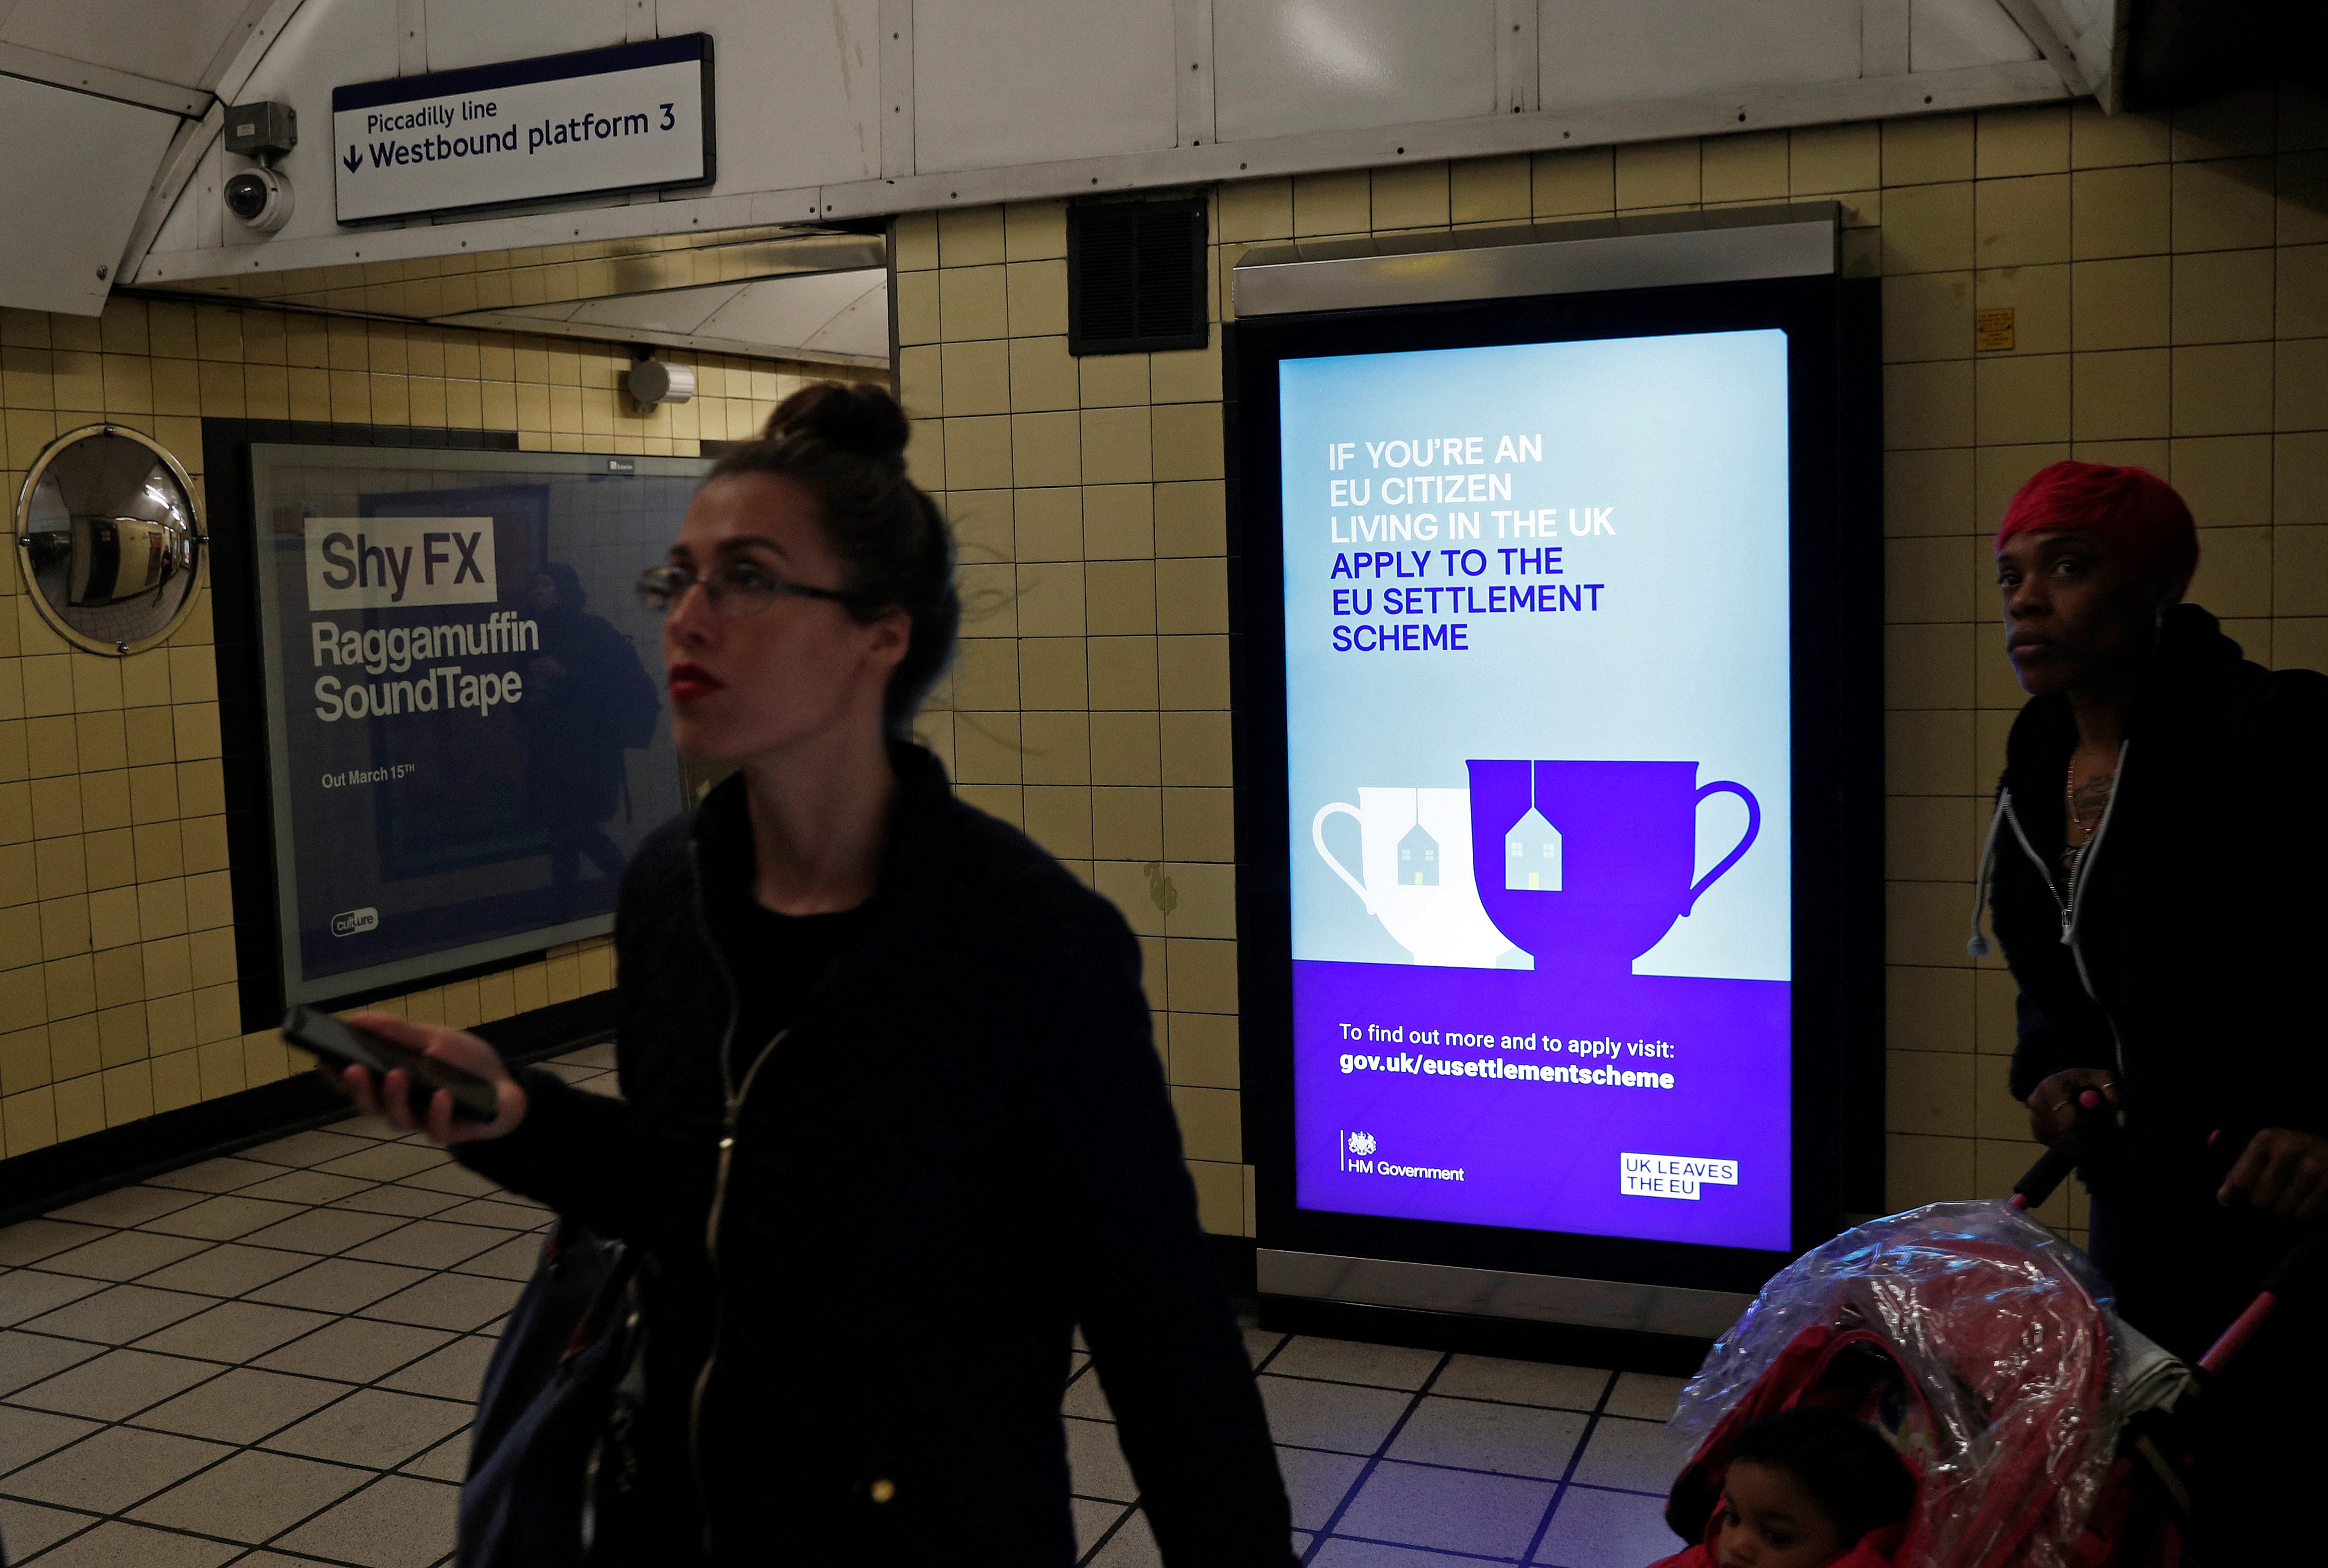 A tartózkodási regisztrációt hirdető plakát a londoni metróban